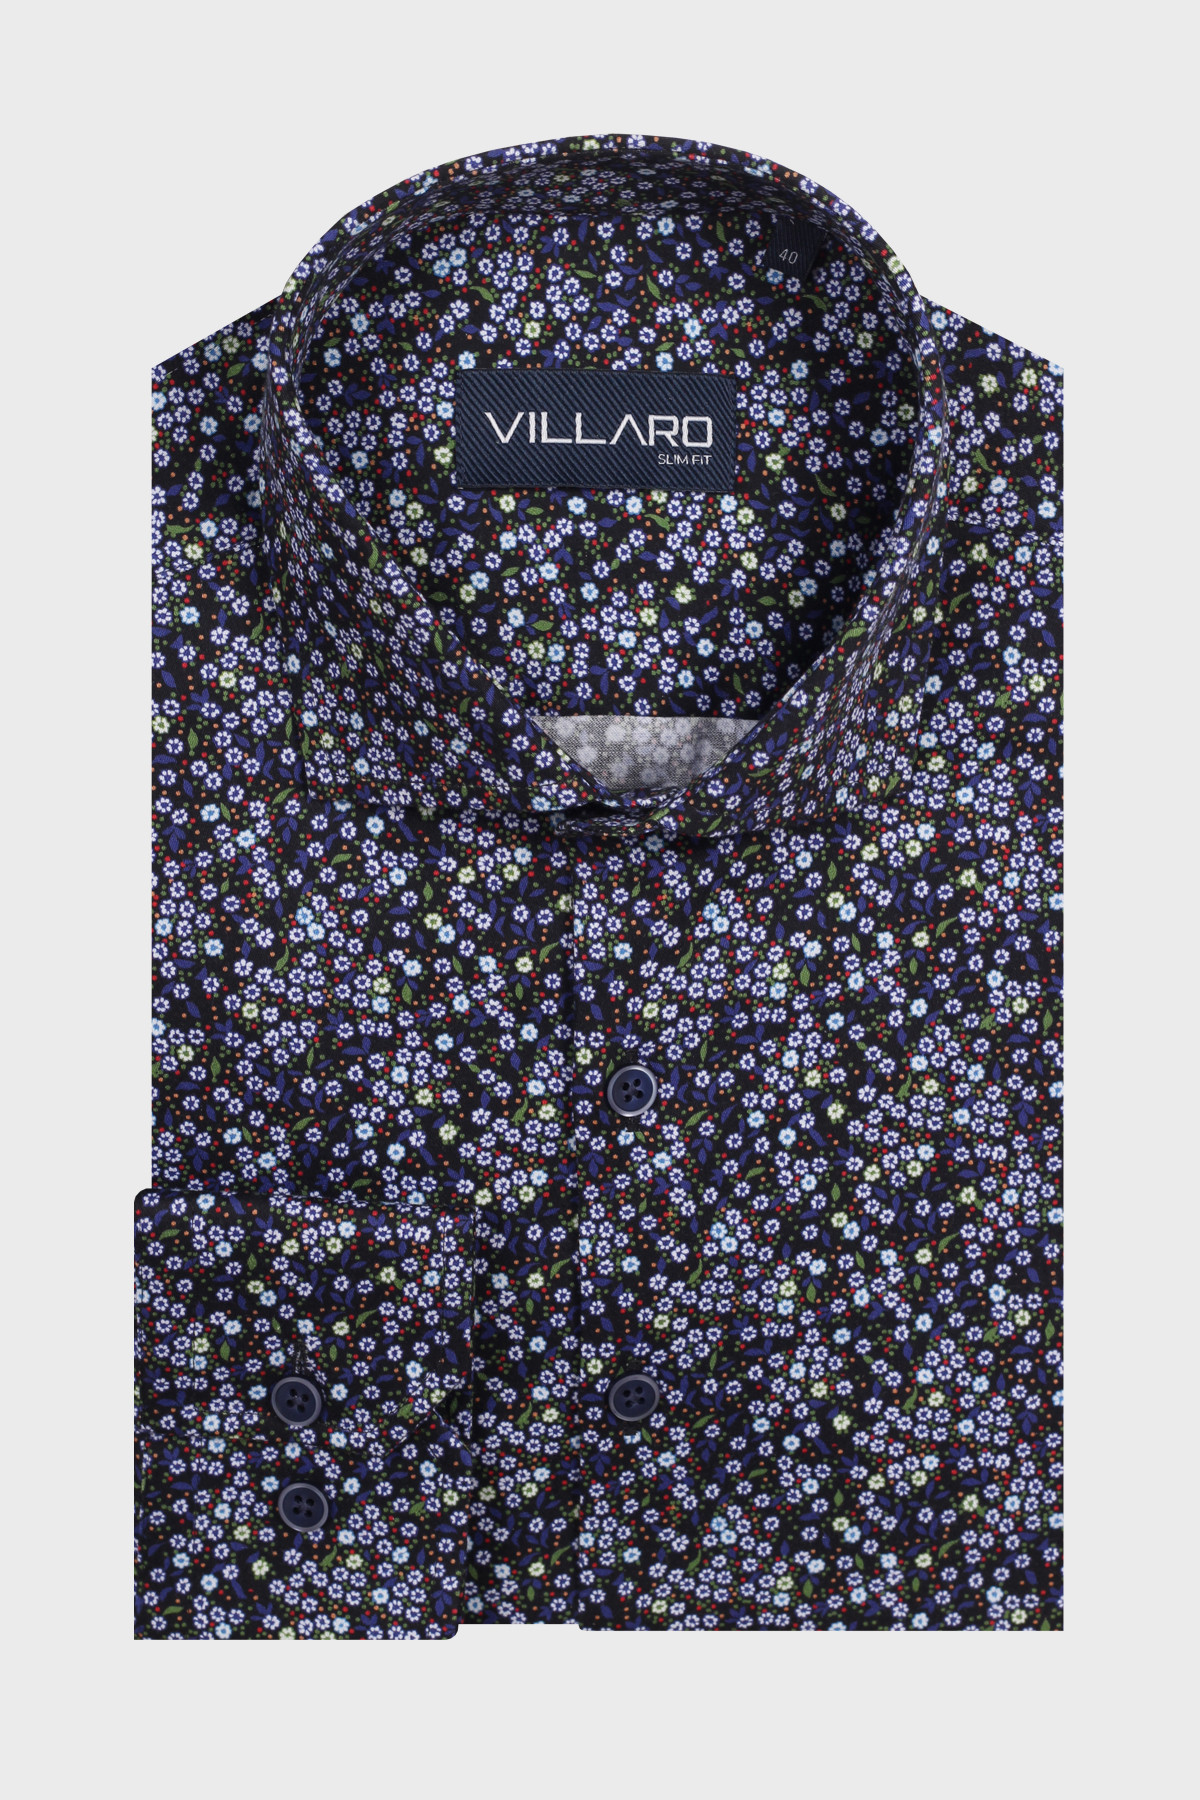 Pánská košile dlouhý rukáv VILLARO by MMER H004DSL Slim Fit vzorovaná prodloužená Velikost: 42